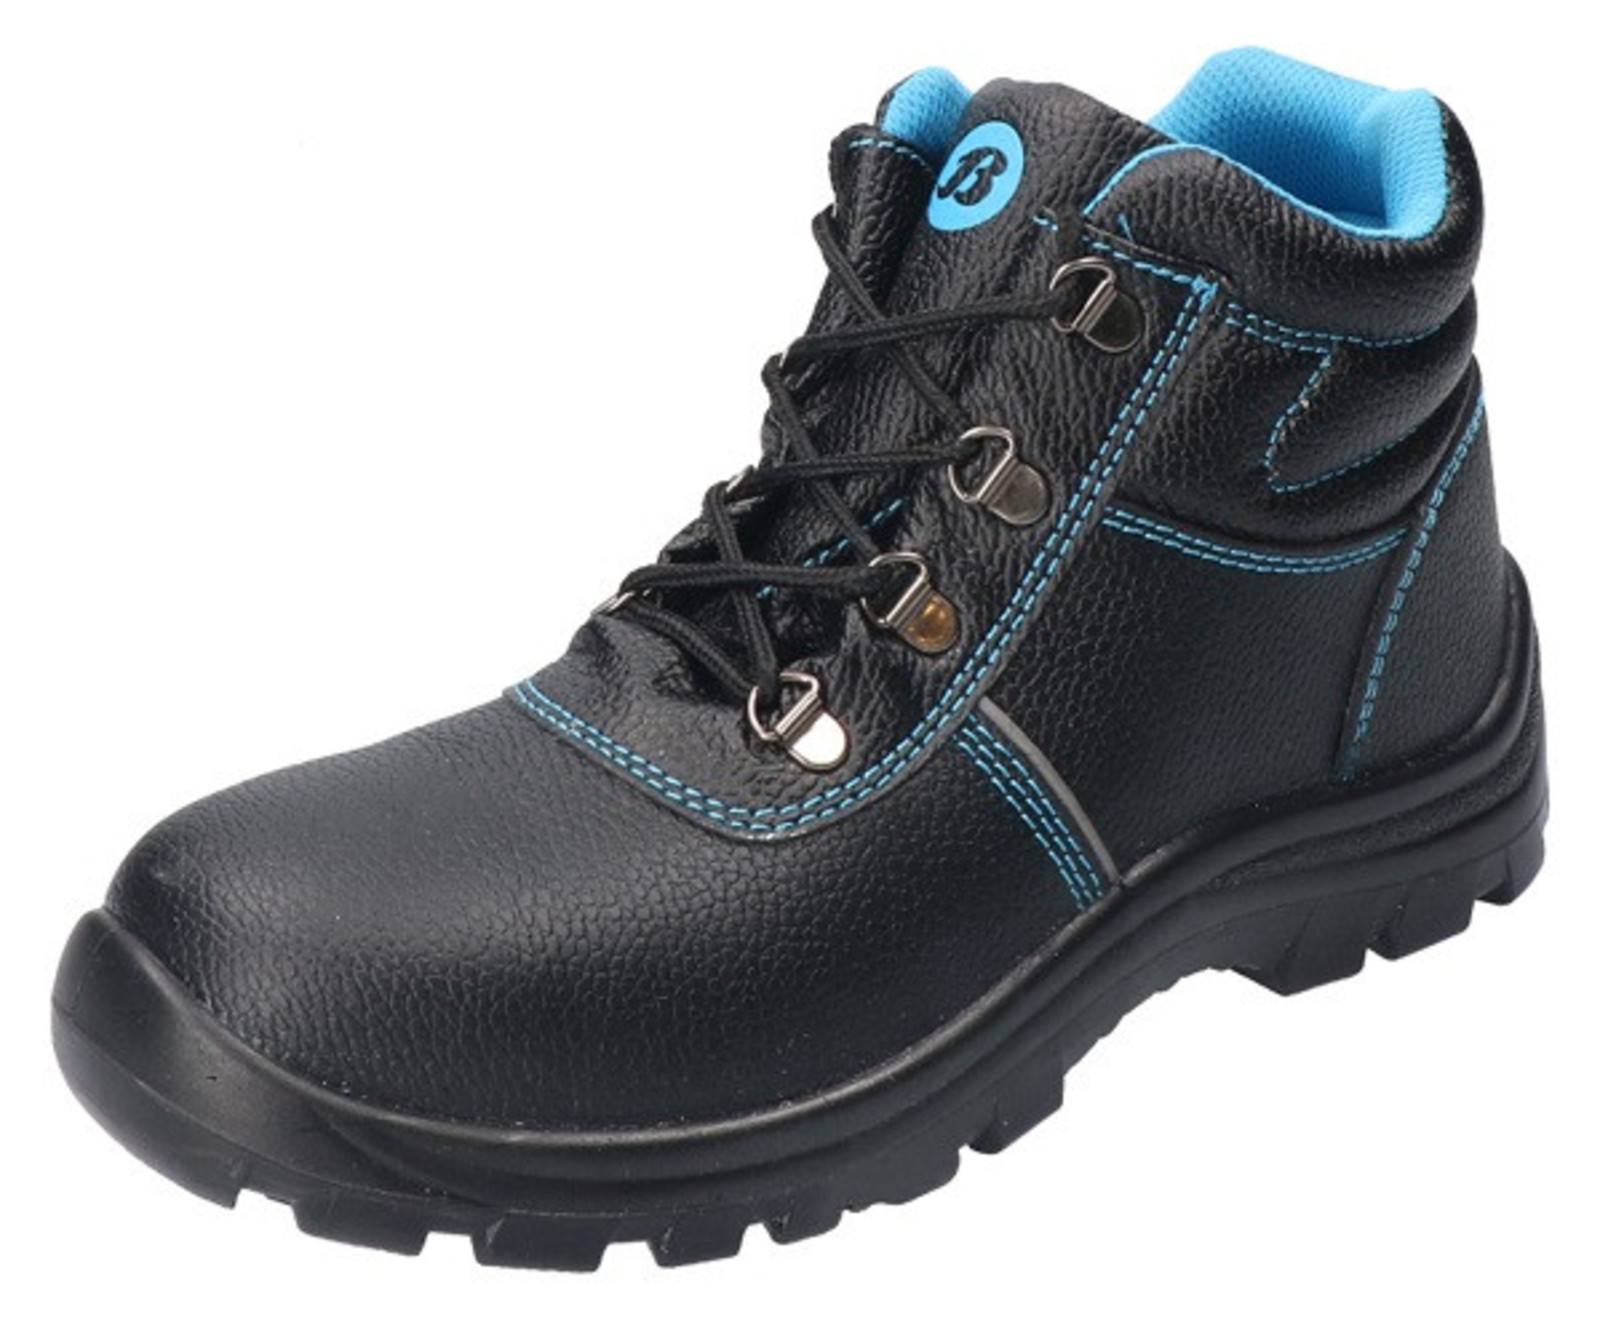 Bezpečnostná obuv Baťa Sirocco S3 - veľkosť: 43, farba: čierna